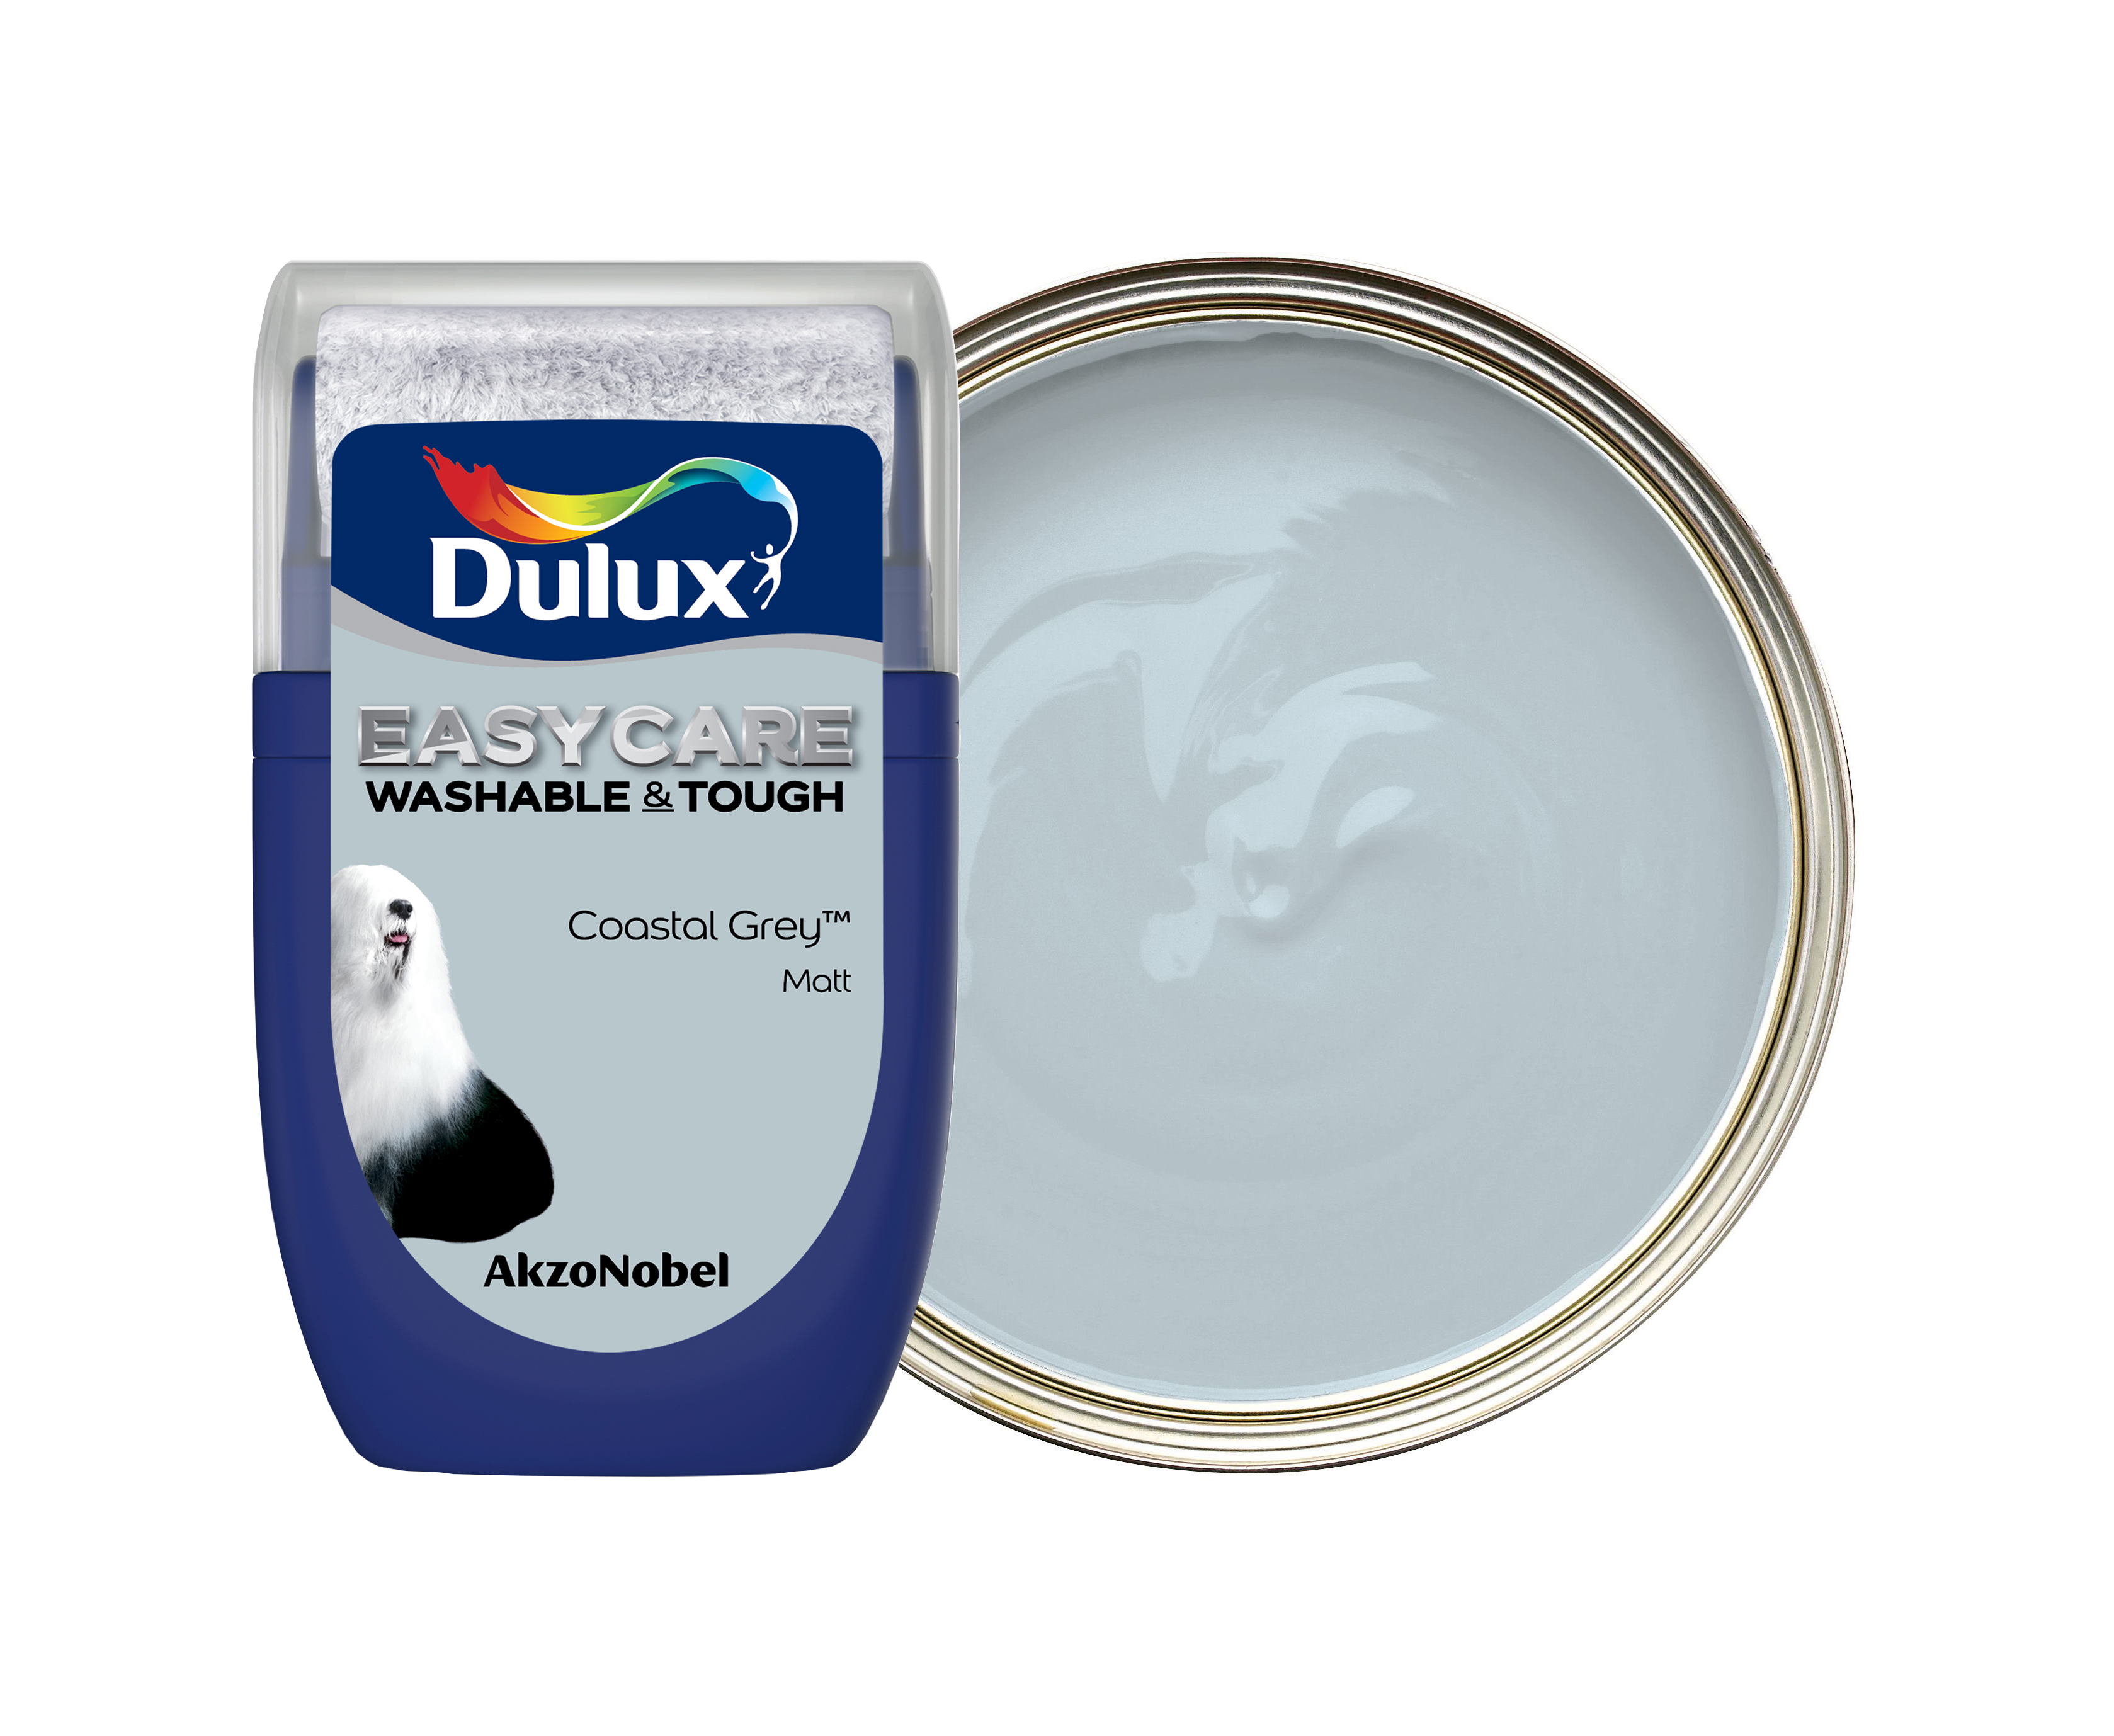 Dulux Easycare Washable & Tough Paint Tester Pot - Coastal Grey - 30ml